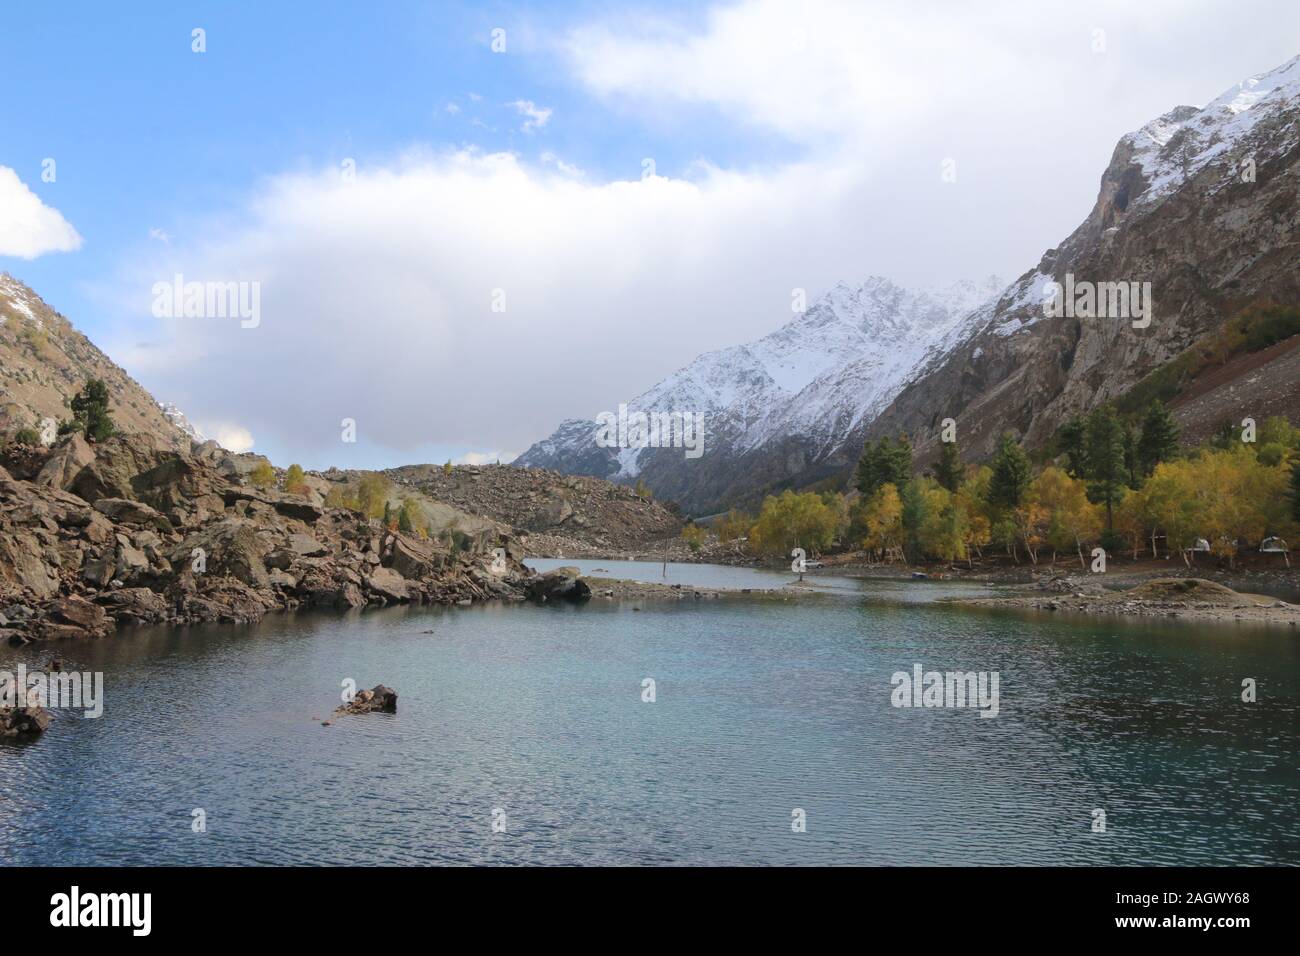 Il Lago Blu è situato nella valle di Naltar, Gilgit-Baltistan, Pakistan e riflette il multi-colori. Un 7,027 m alto Sapntik picco è anche lì. Foto Stock